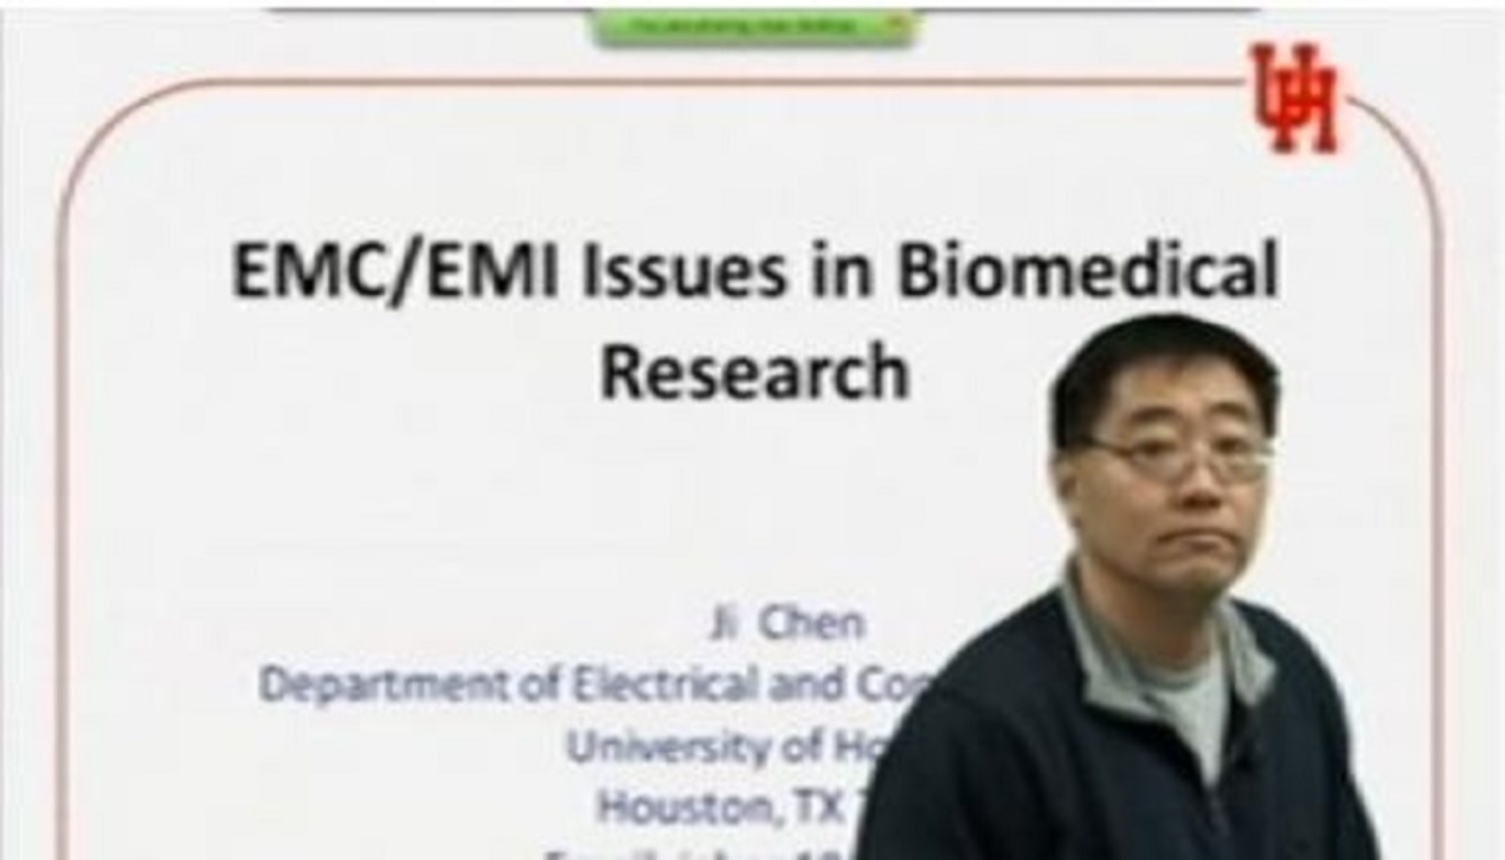 EMC/EMI Issues in Biomedical Research Video